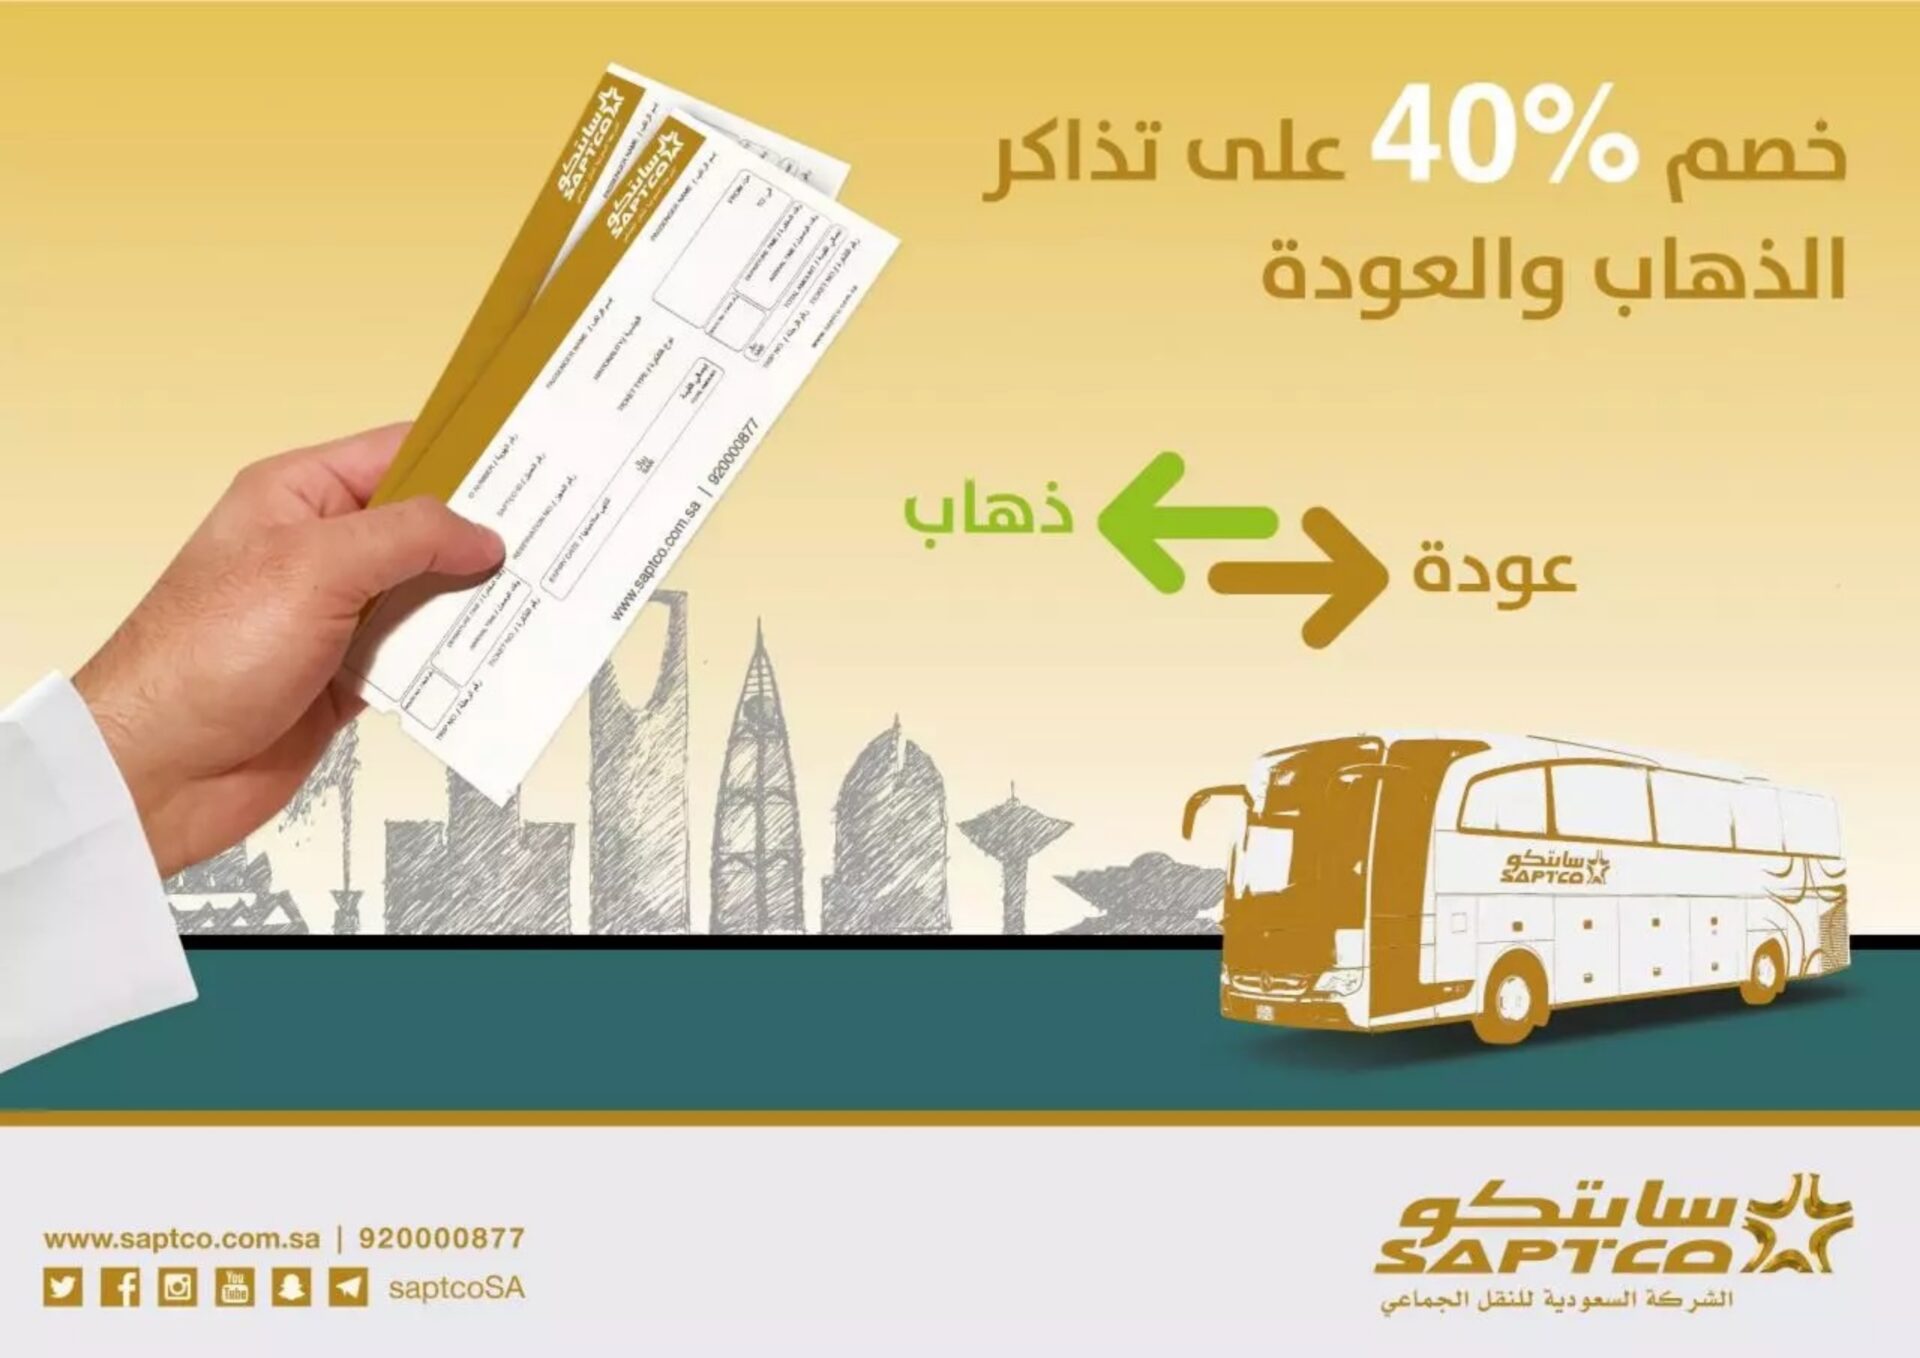 أسعار تذاكر النقل الجماعي السعودي من الرياض إلى جده، حجز تذاكر النقل الجماعي سابتكو